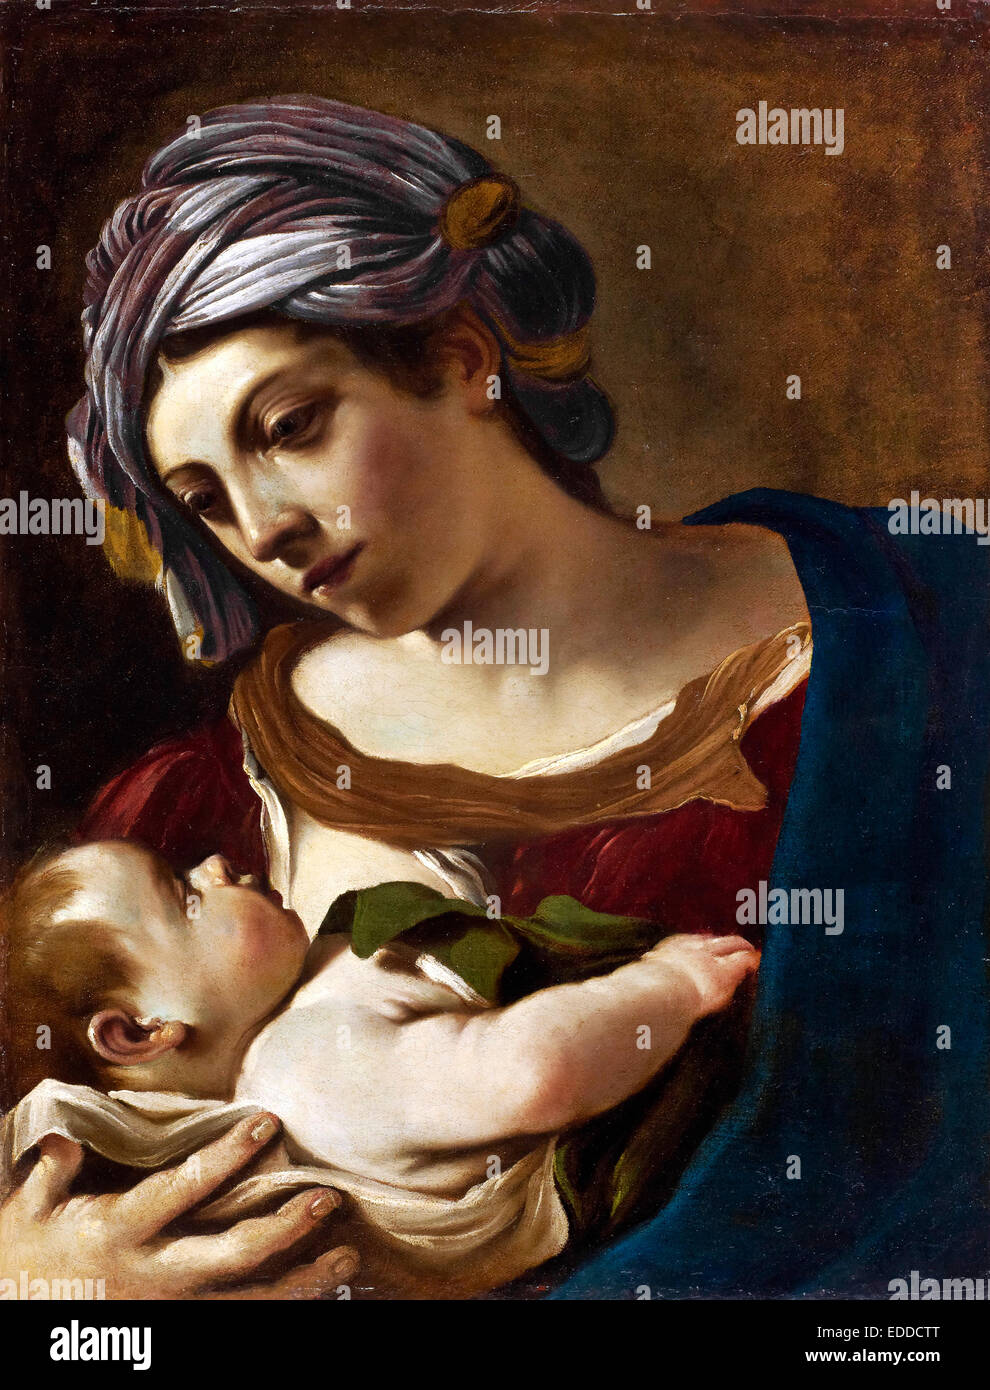 Guercino, la Madonna e il Bambino 1621 olio su tela. Stadel, Frankfurt am Main, Germania. Foto Stock